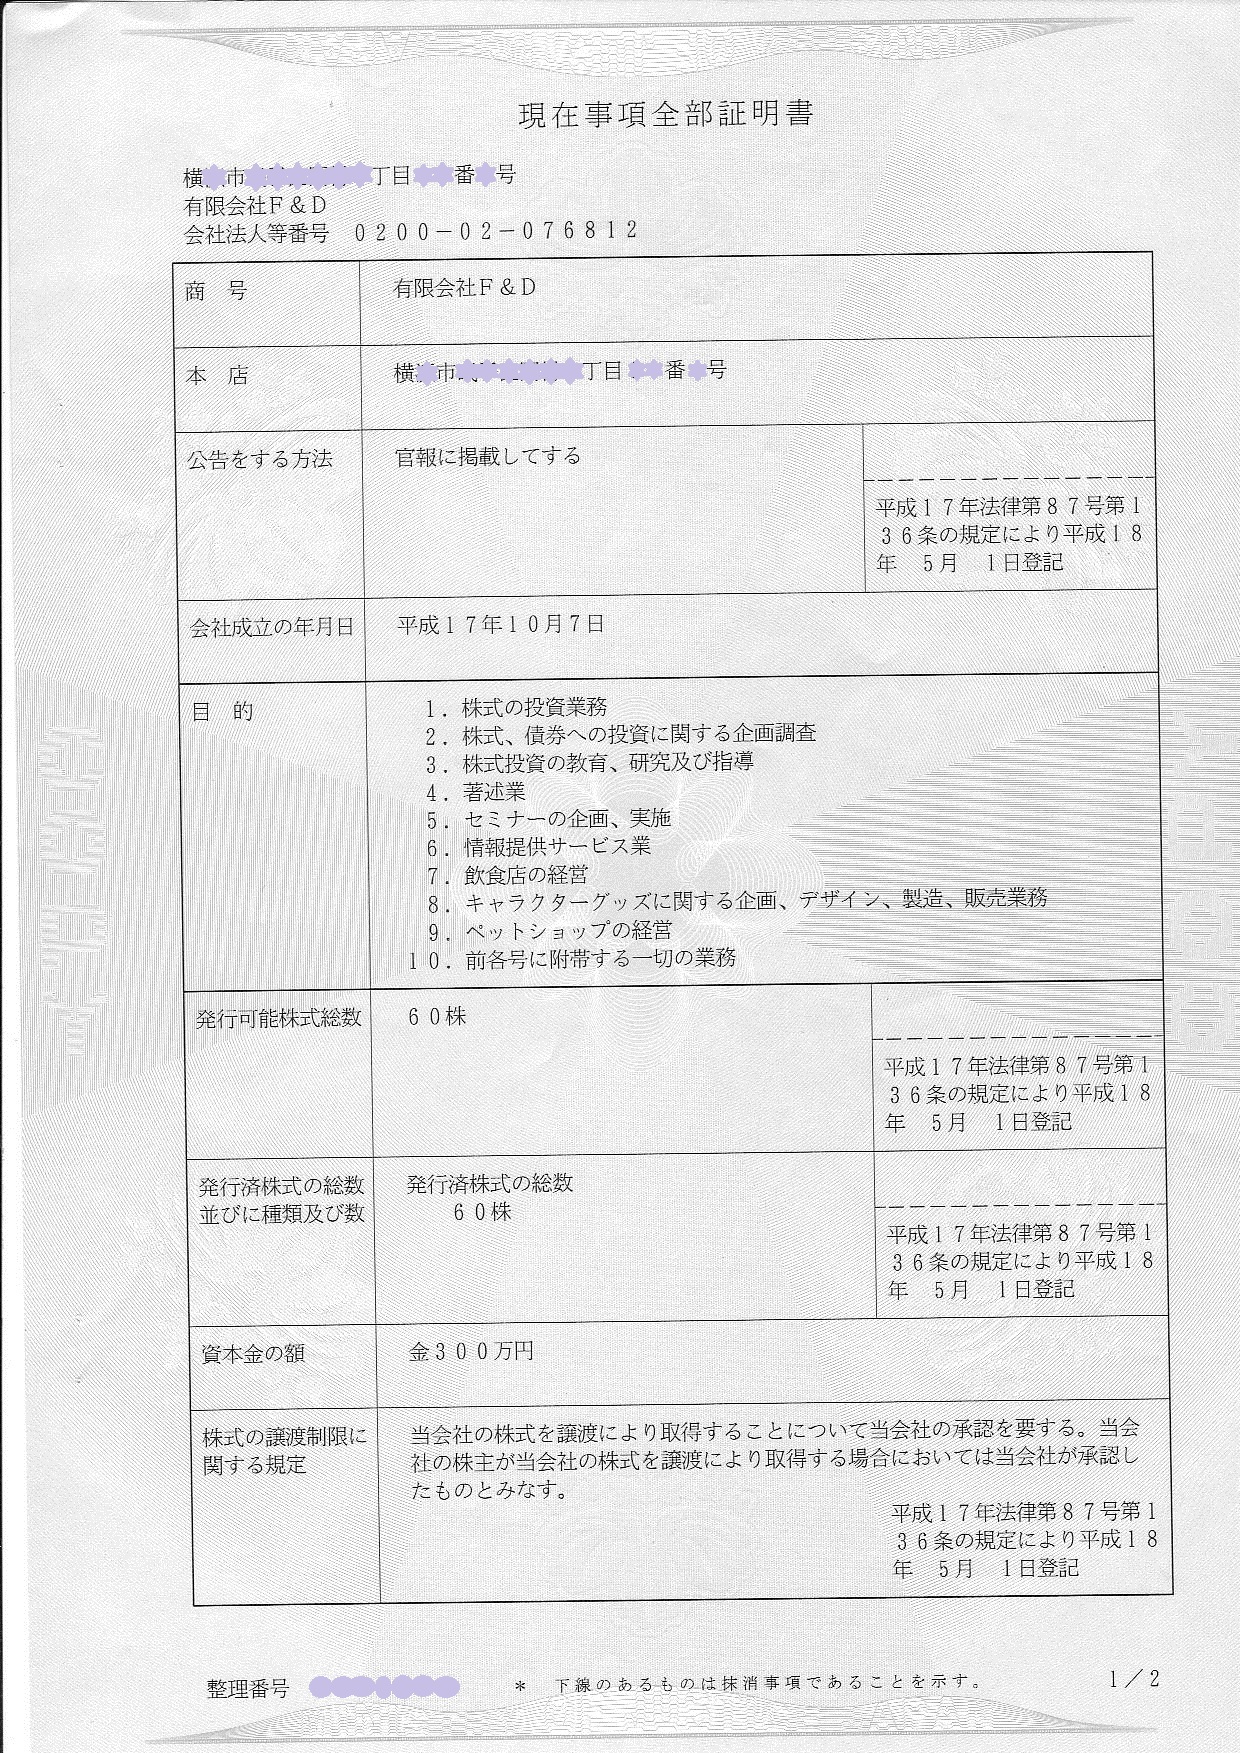 有限会社F&D登記簿謄本 非公式サイト 若林史江を研究する会